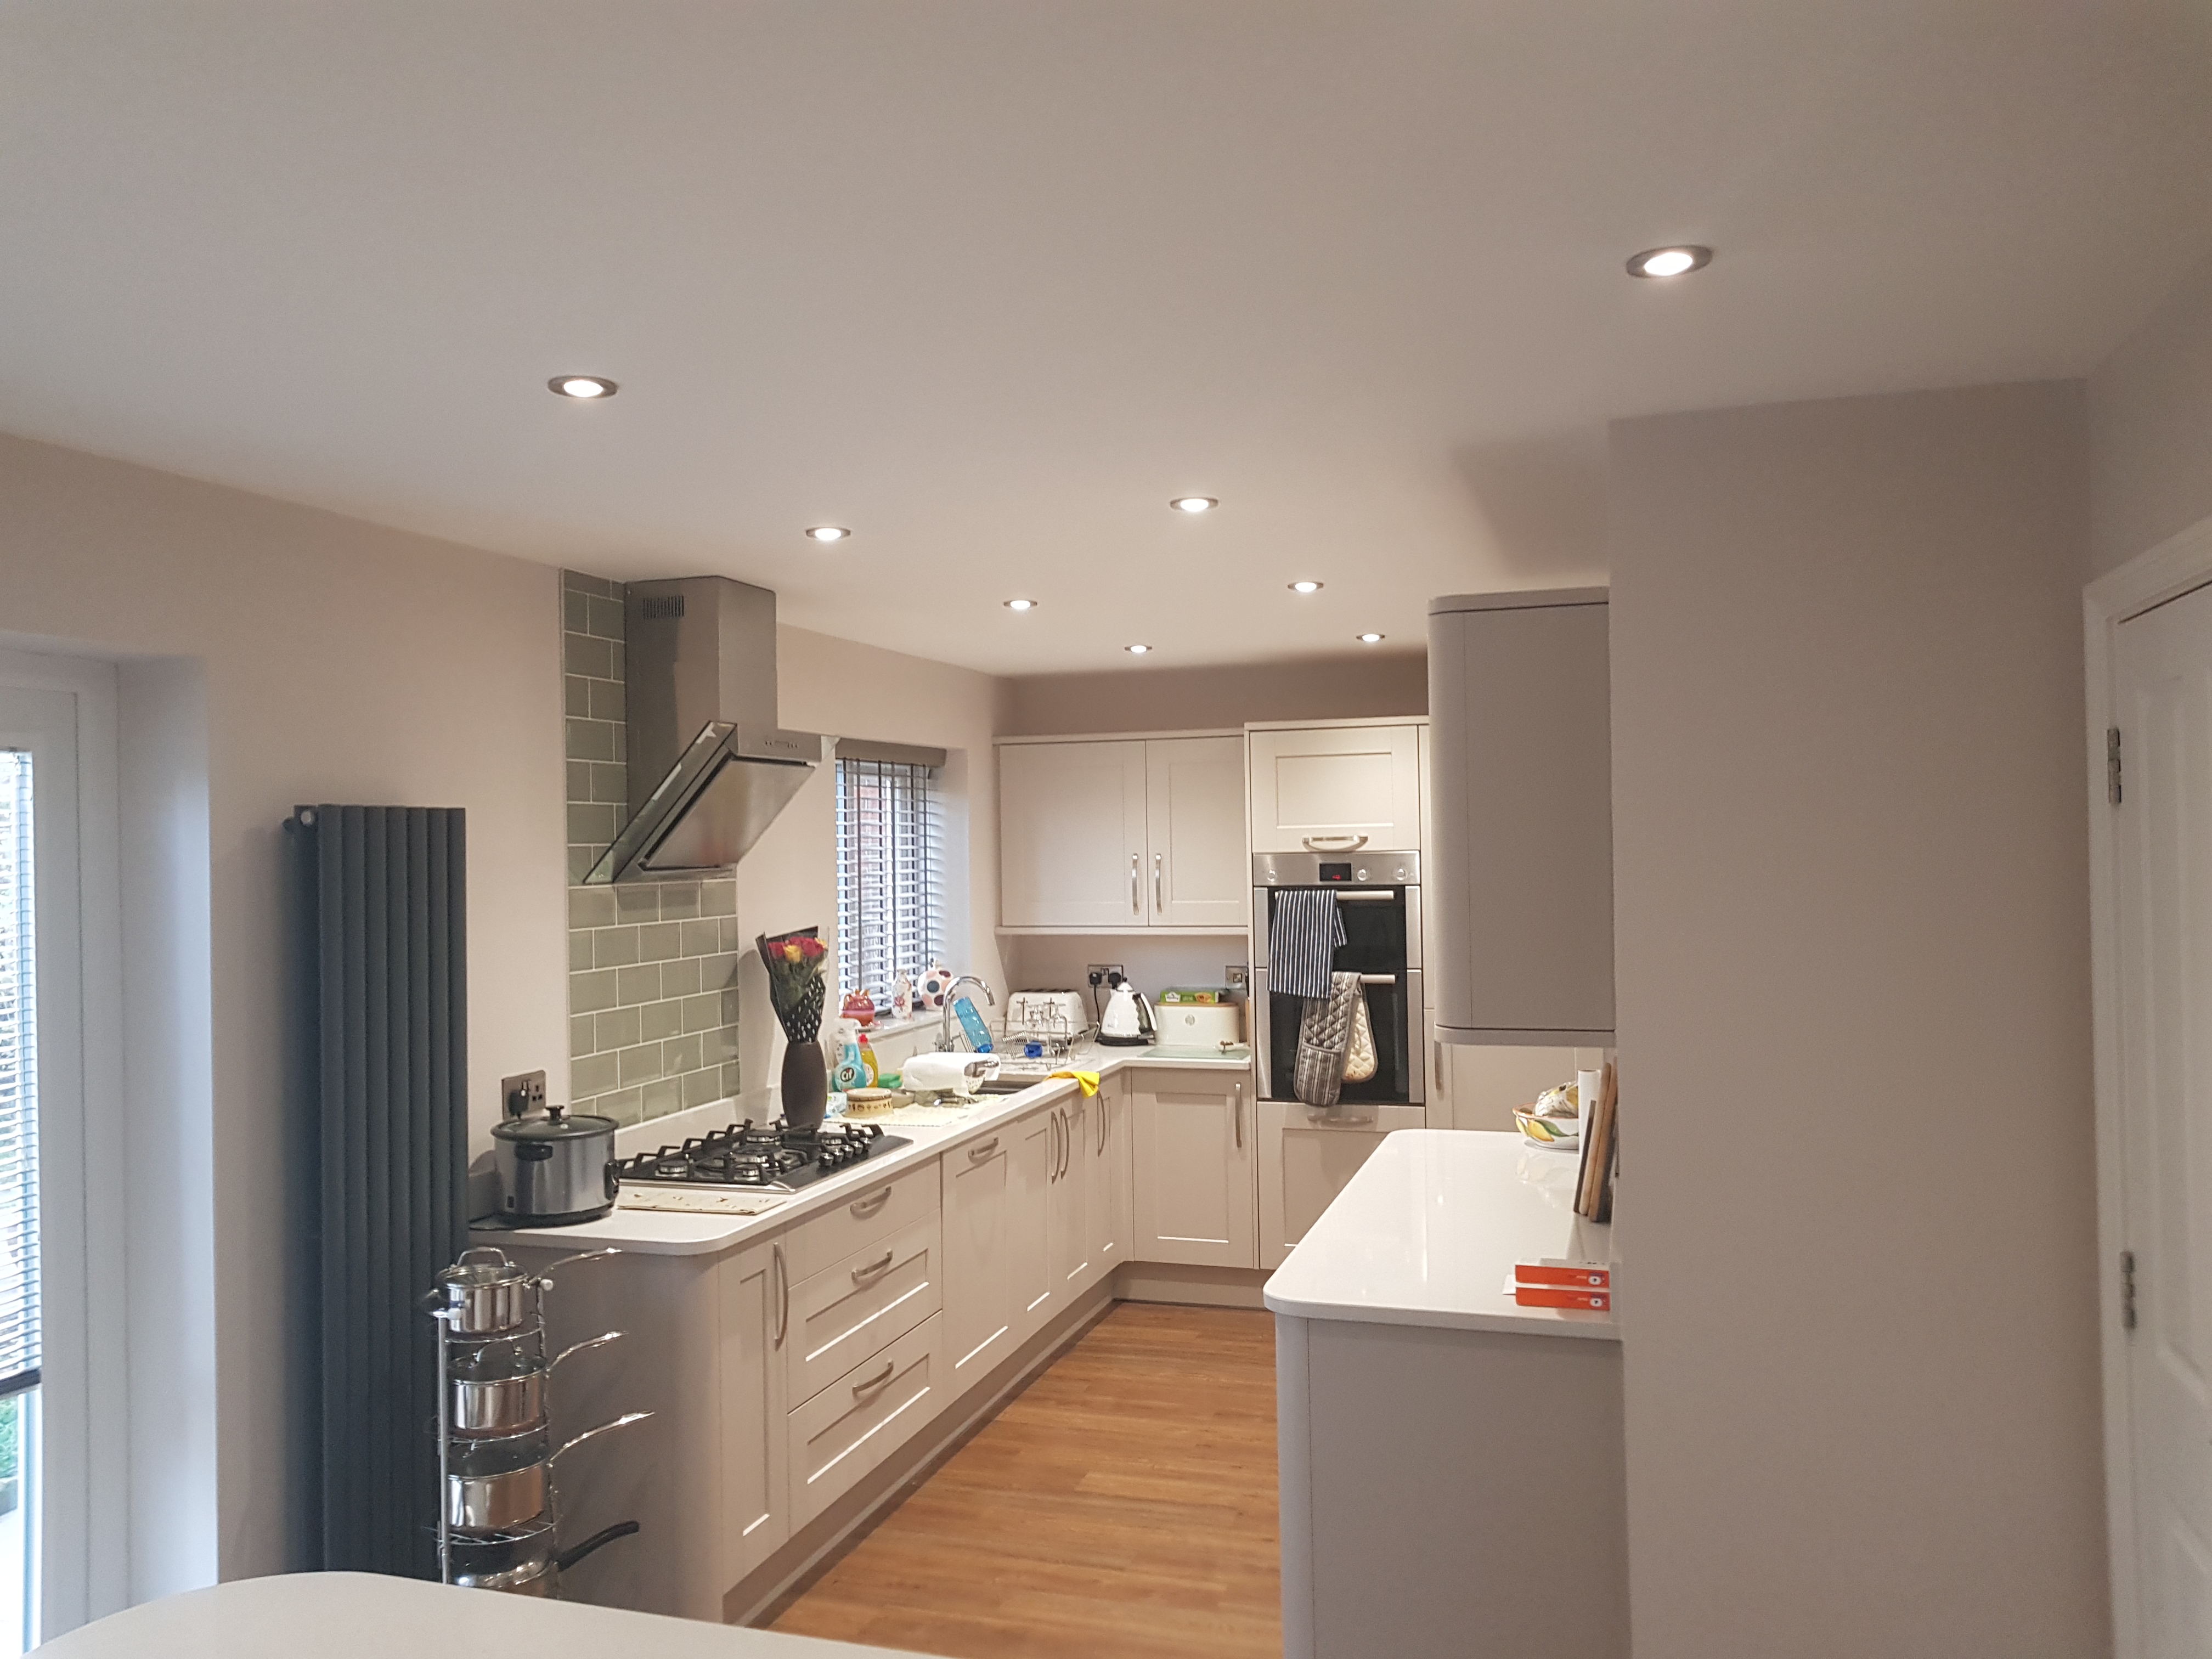 Kitchen lighting Installer in Congleton